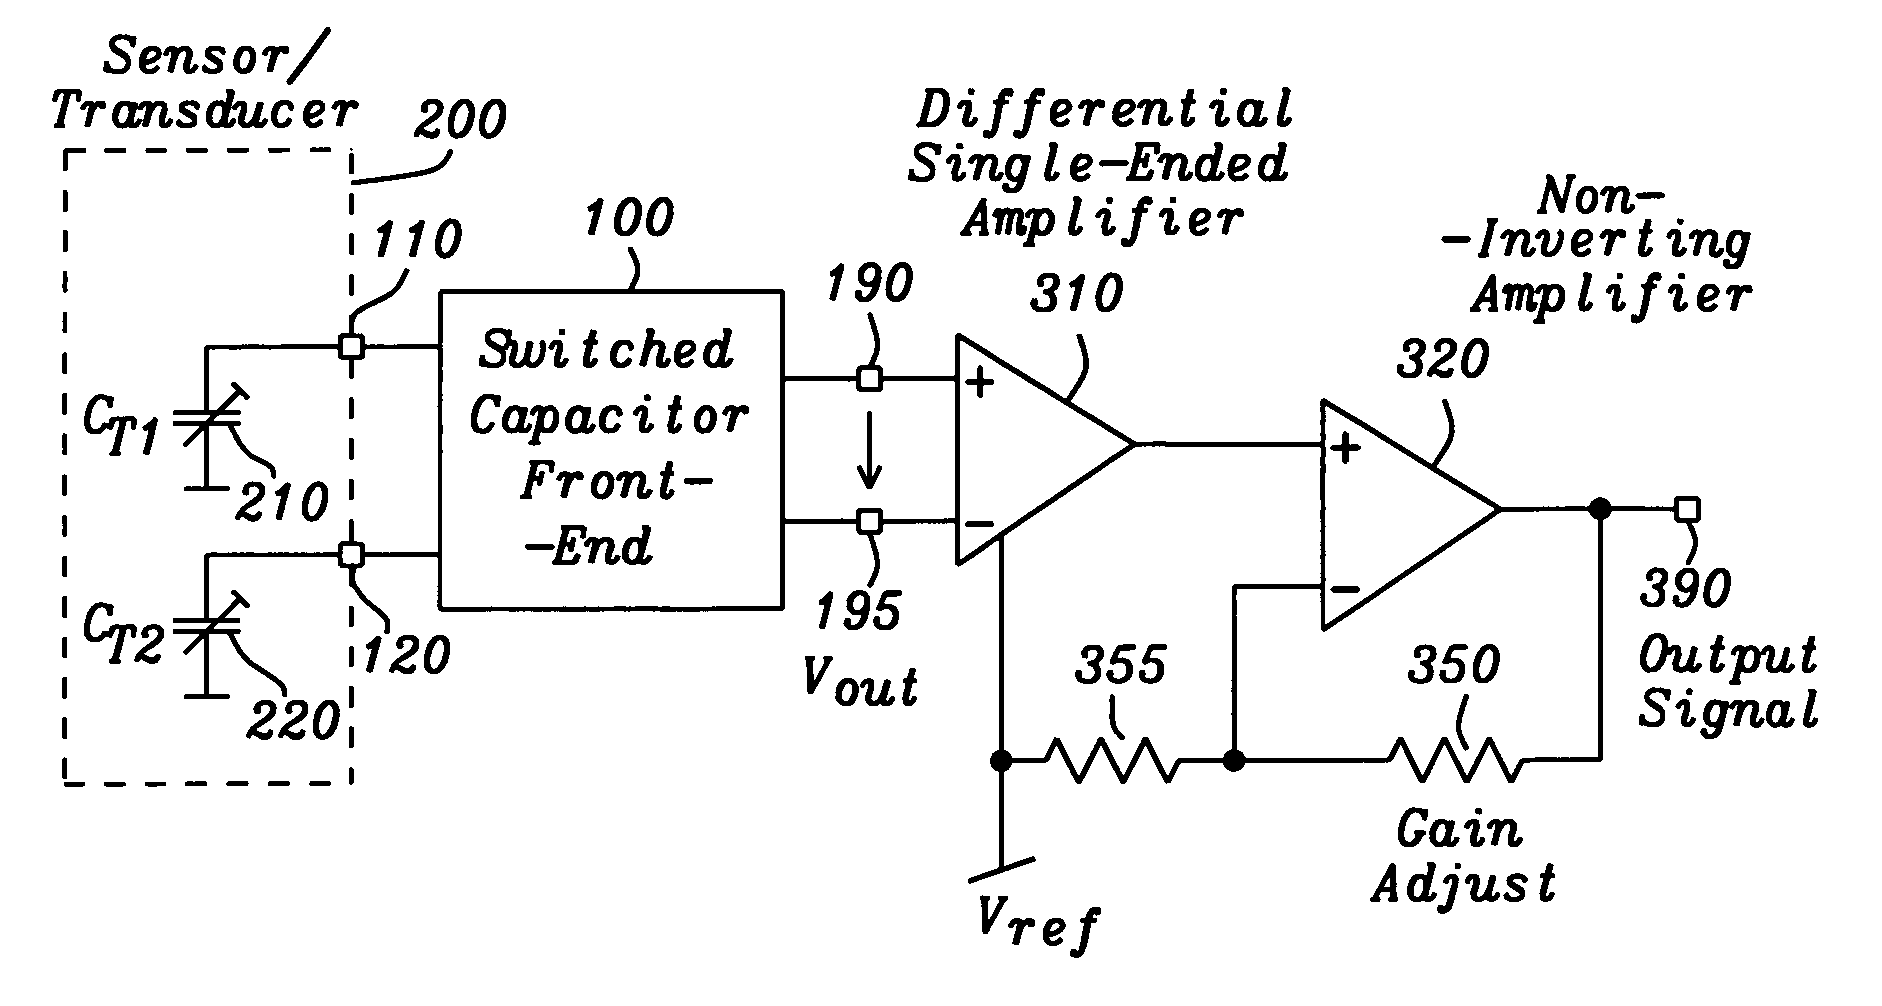 Differential capacitance measurement